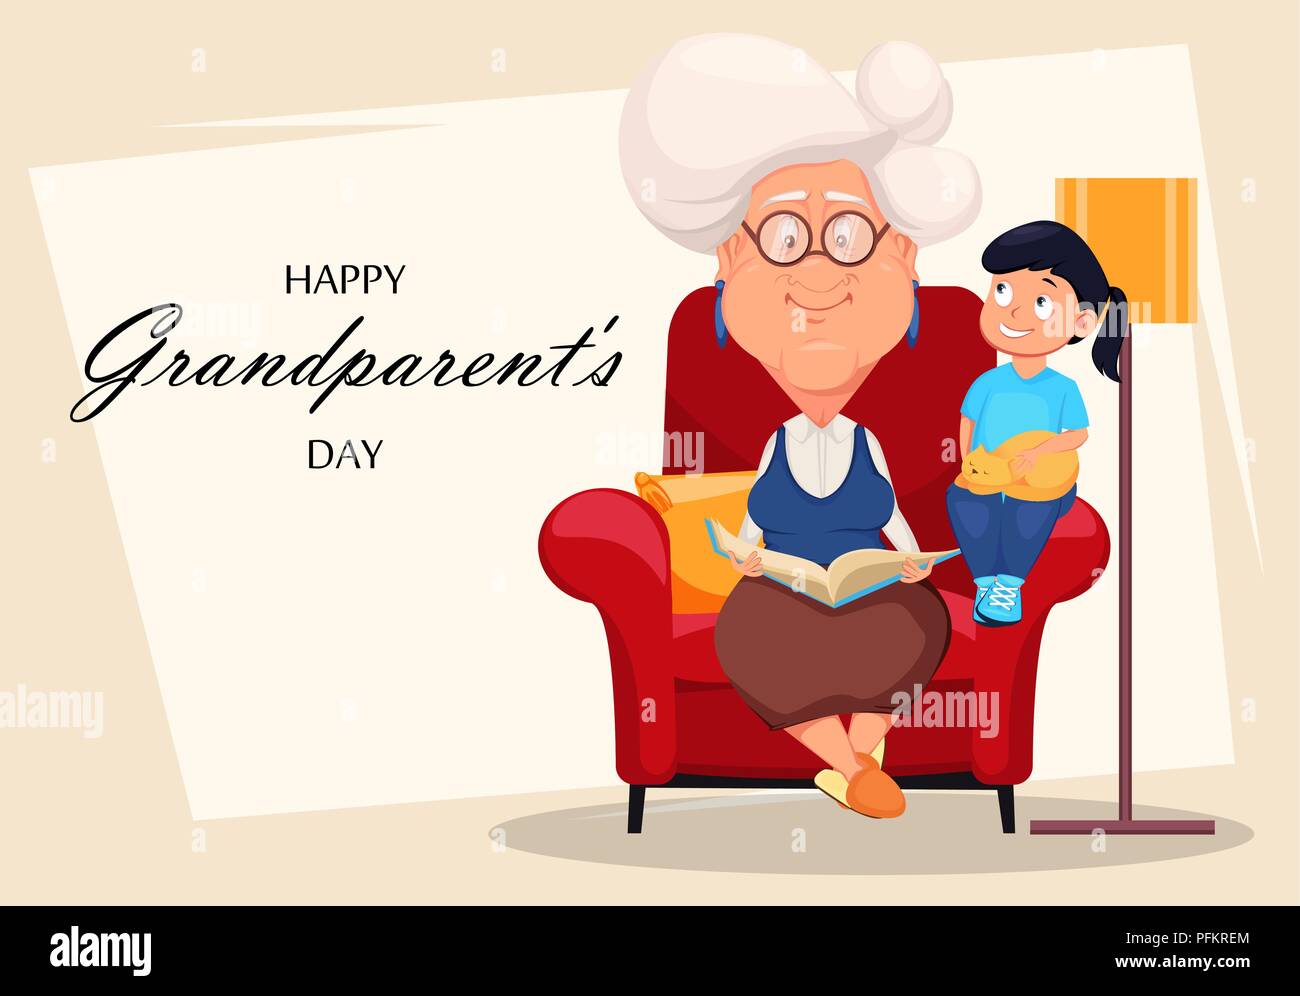 Glückliche Großeltern-Tag Grußkarte. Silber behaarte Oma sitzt in einem  Sessel und las ein Buch zu ihrer Enkelin. Cartoon Charakter. Vektor krank  Stock-Vektorgrafik - Alamy